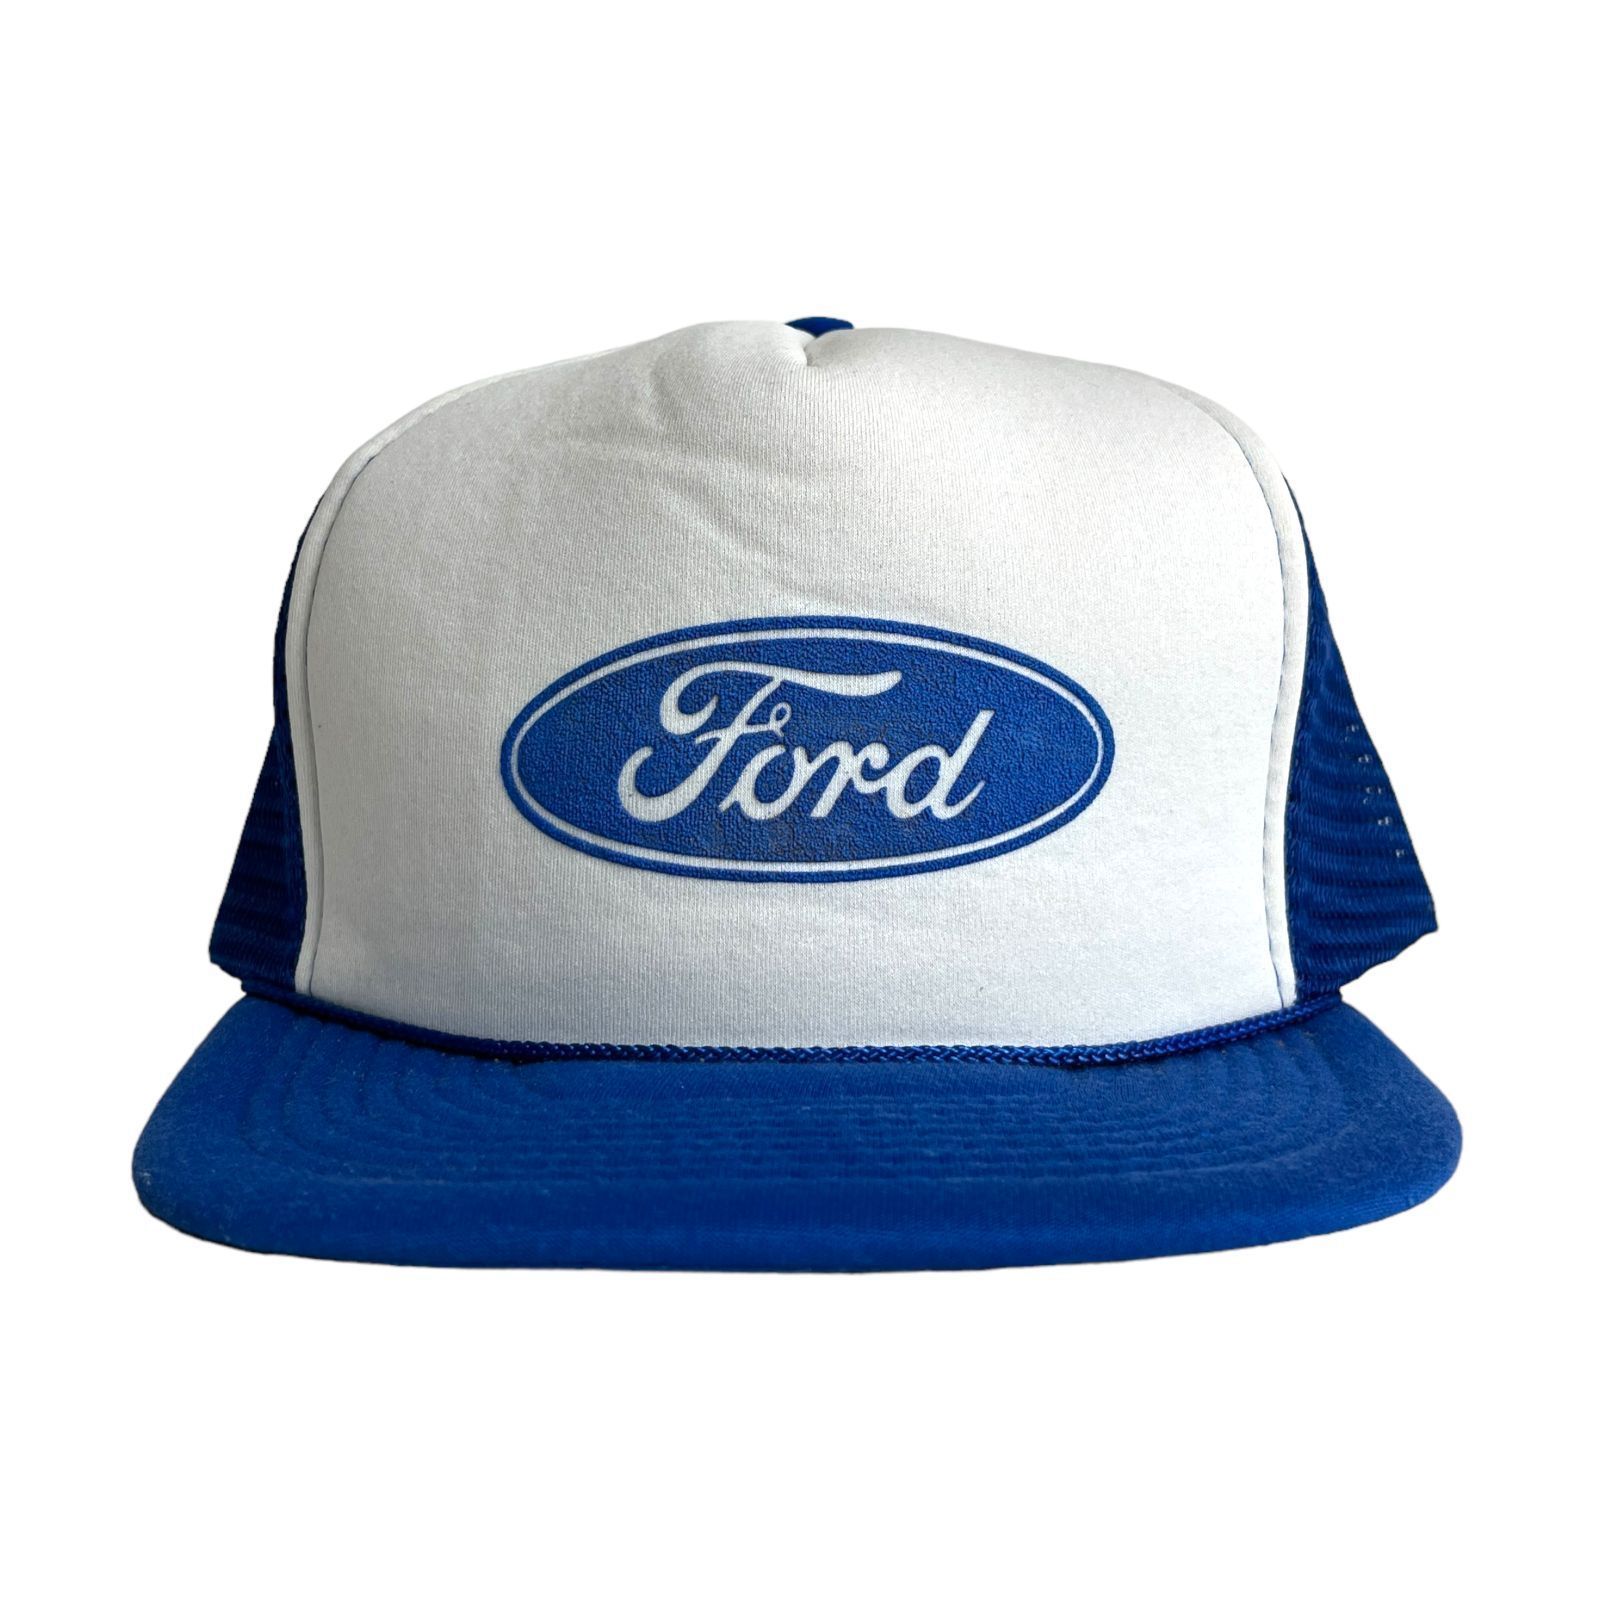 キャップ / 帽子】Ford (フォード) ビンテージ メッシュキャップ 